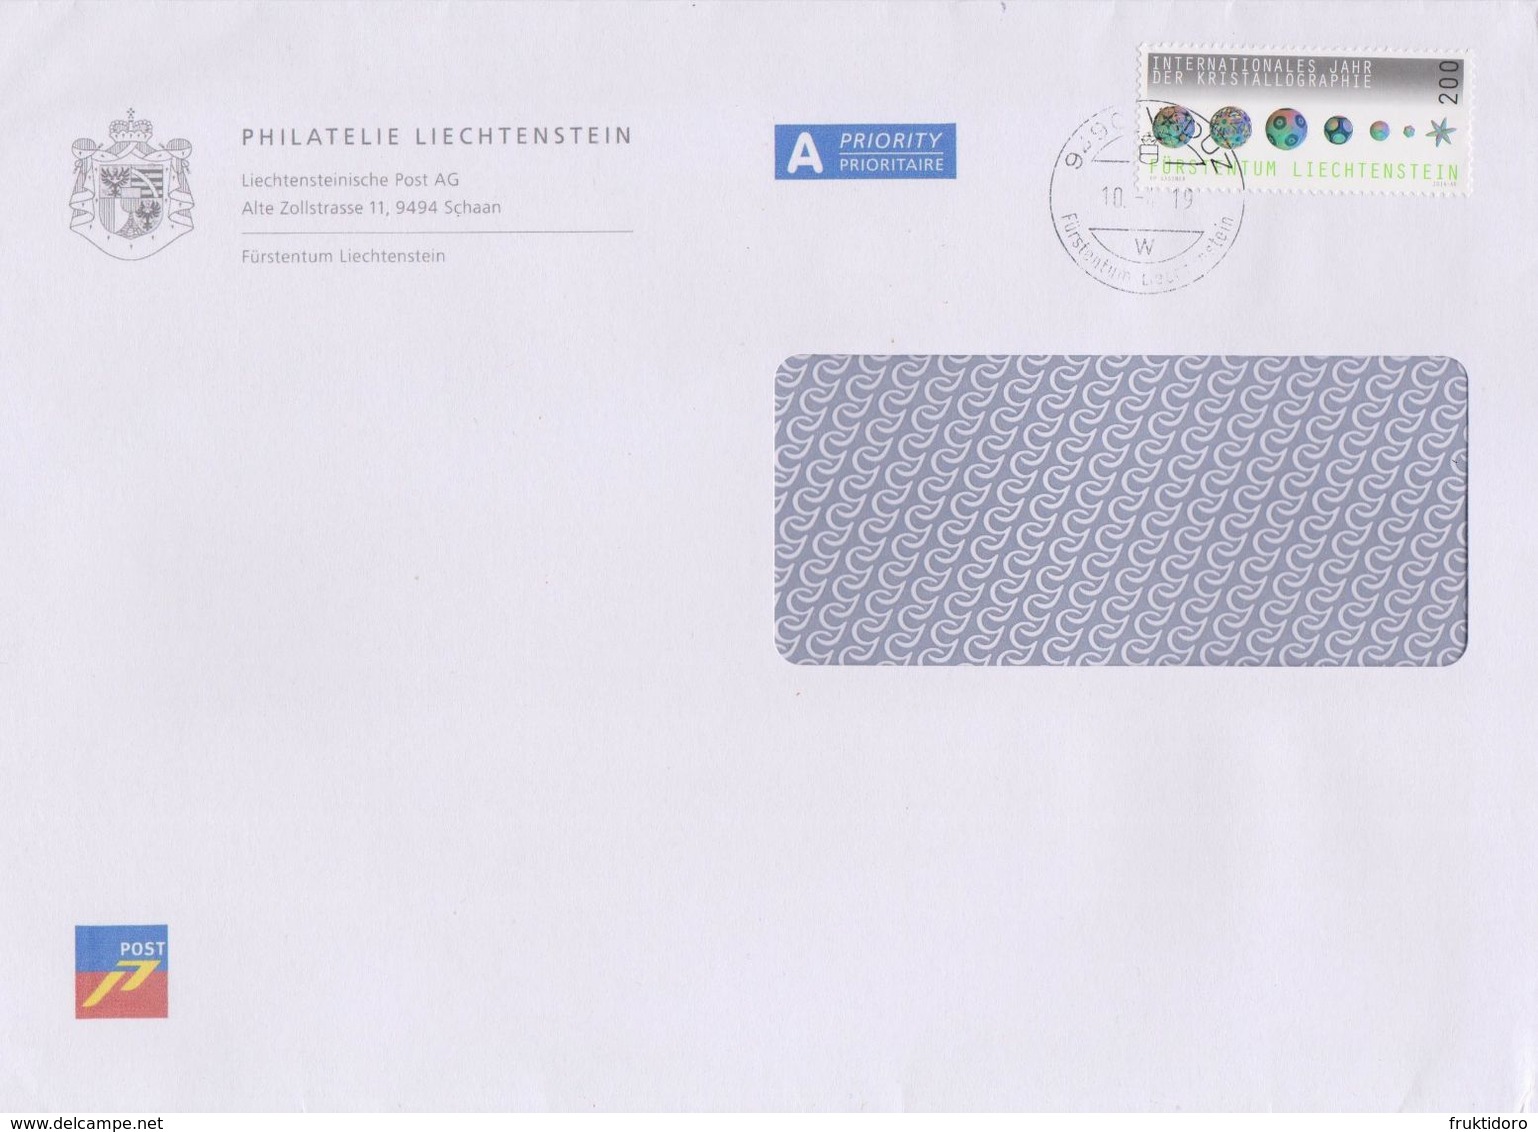 Liechtenstein Postmark - Envelope Philatelie Liechtenschtein - Mi 1732 - Crystallography Cancellation October 2019 - Maschinenstempel (EMA)